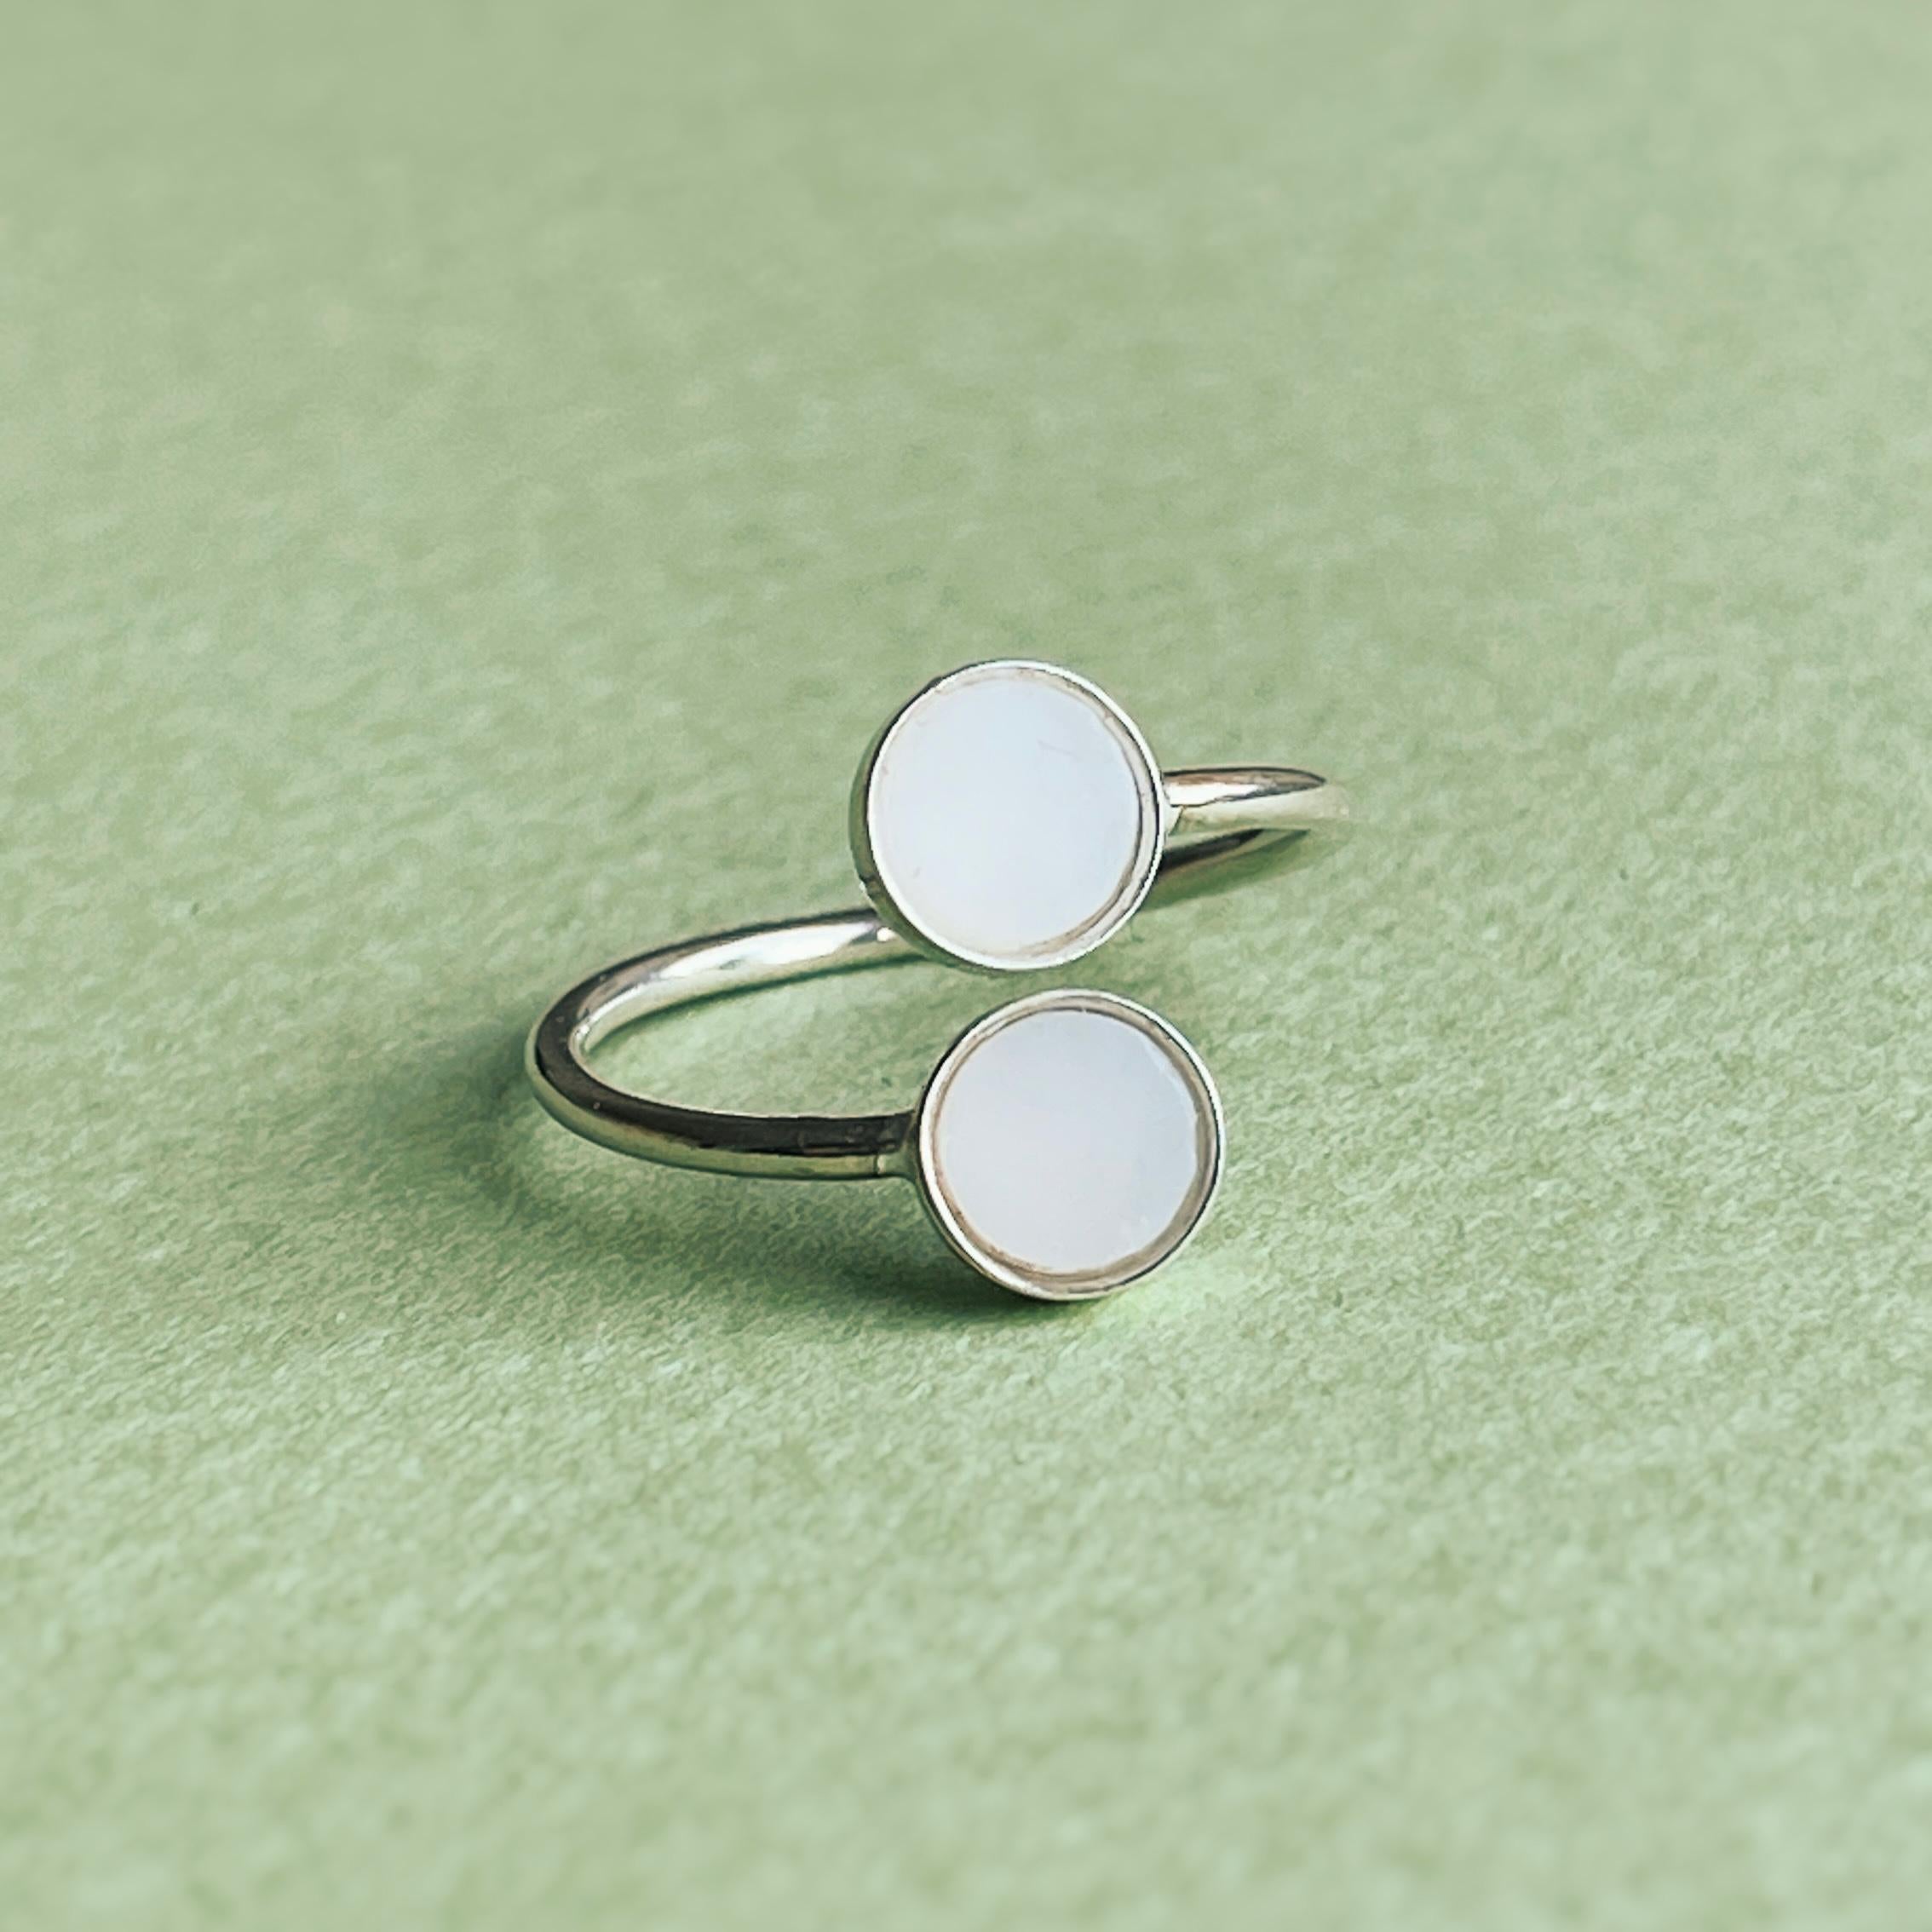 Erhöhen Sie Ihren Stil mit unserem Ring aus Sterlingsilber mit rohen weißen Opalsteinen. Dieser verstellbare Ring bietet sowohl zeitlose Eleganz als auch individuellen Komfort für ein wirklich einzigartiges Accessoire.
Der Ring ist aus